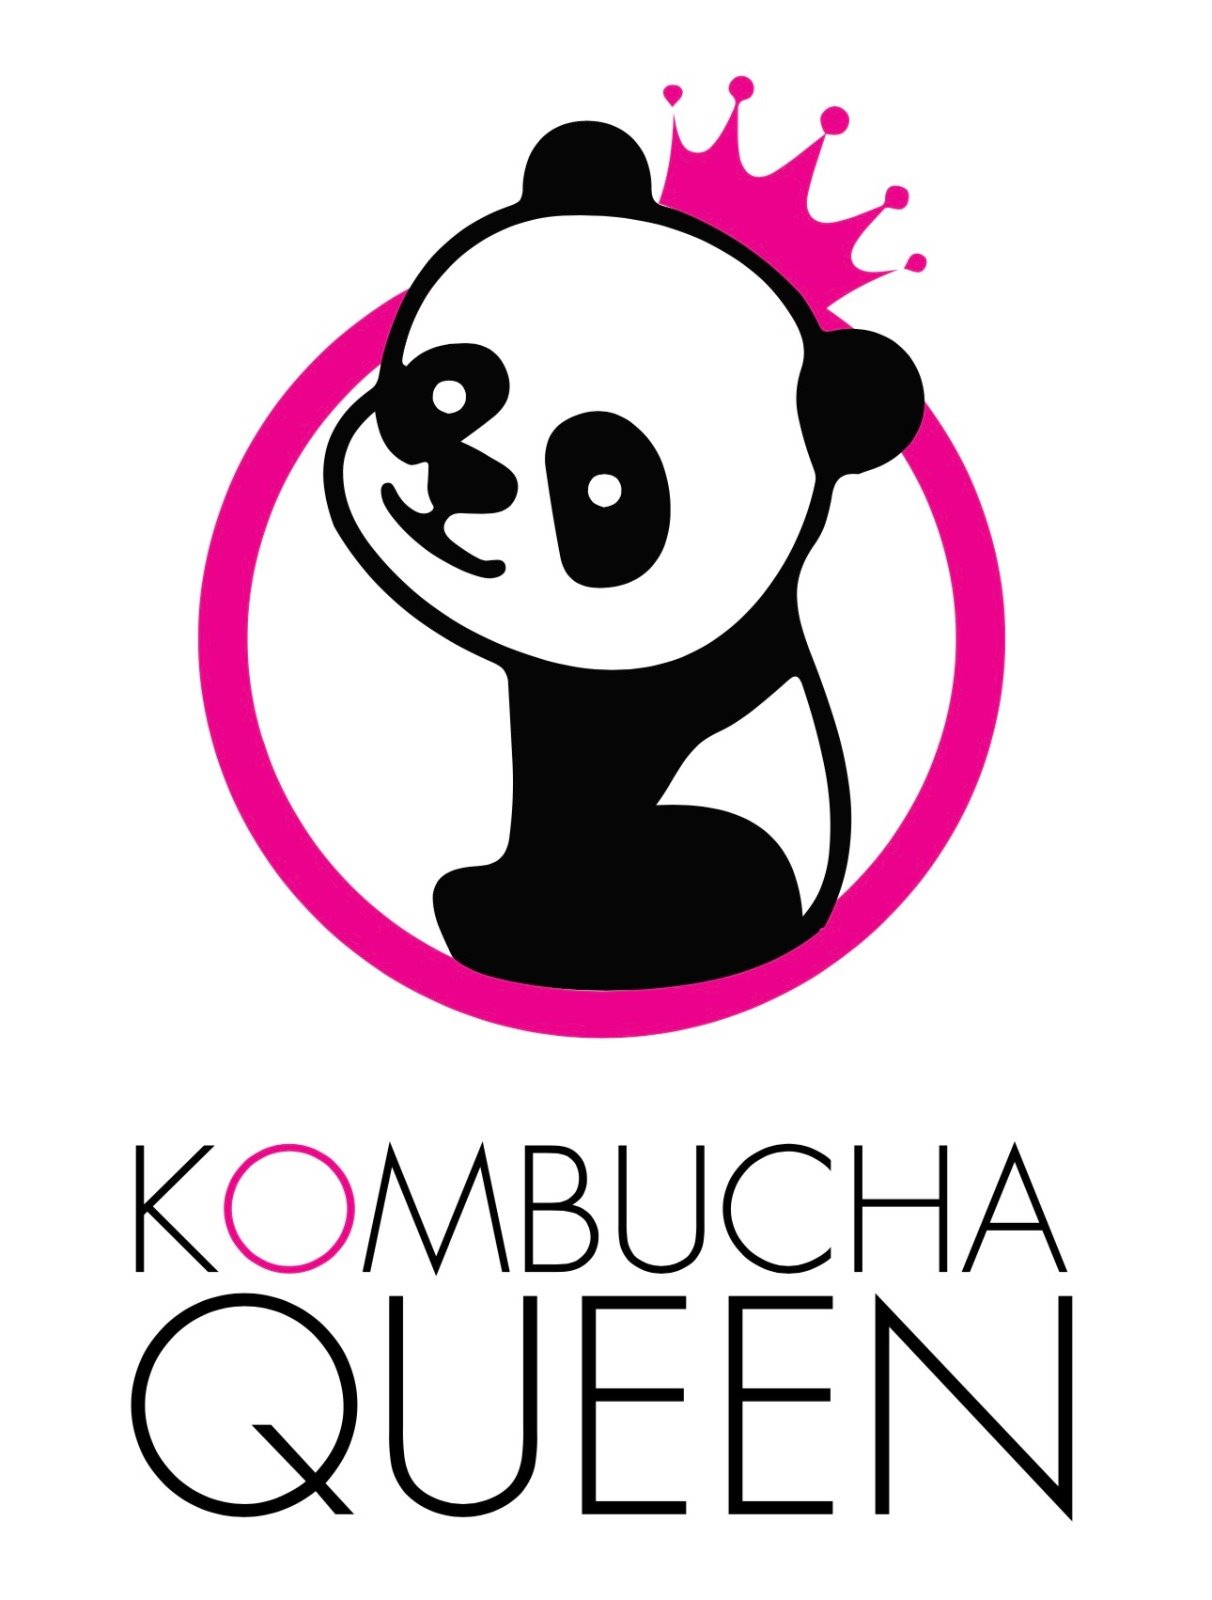 Kombucha Queen